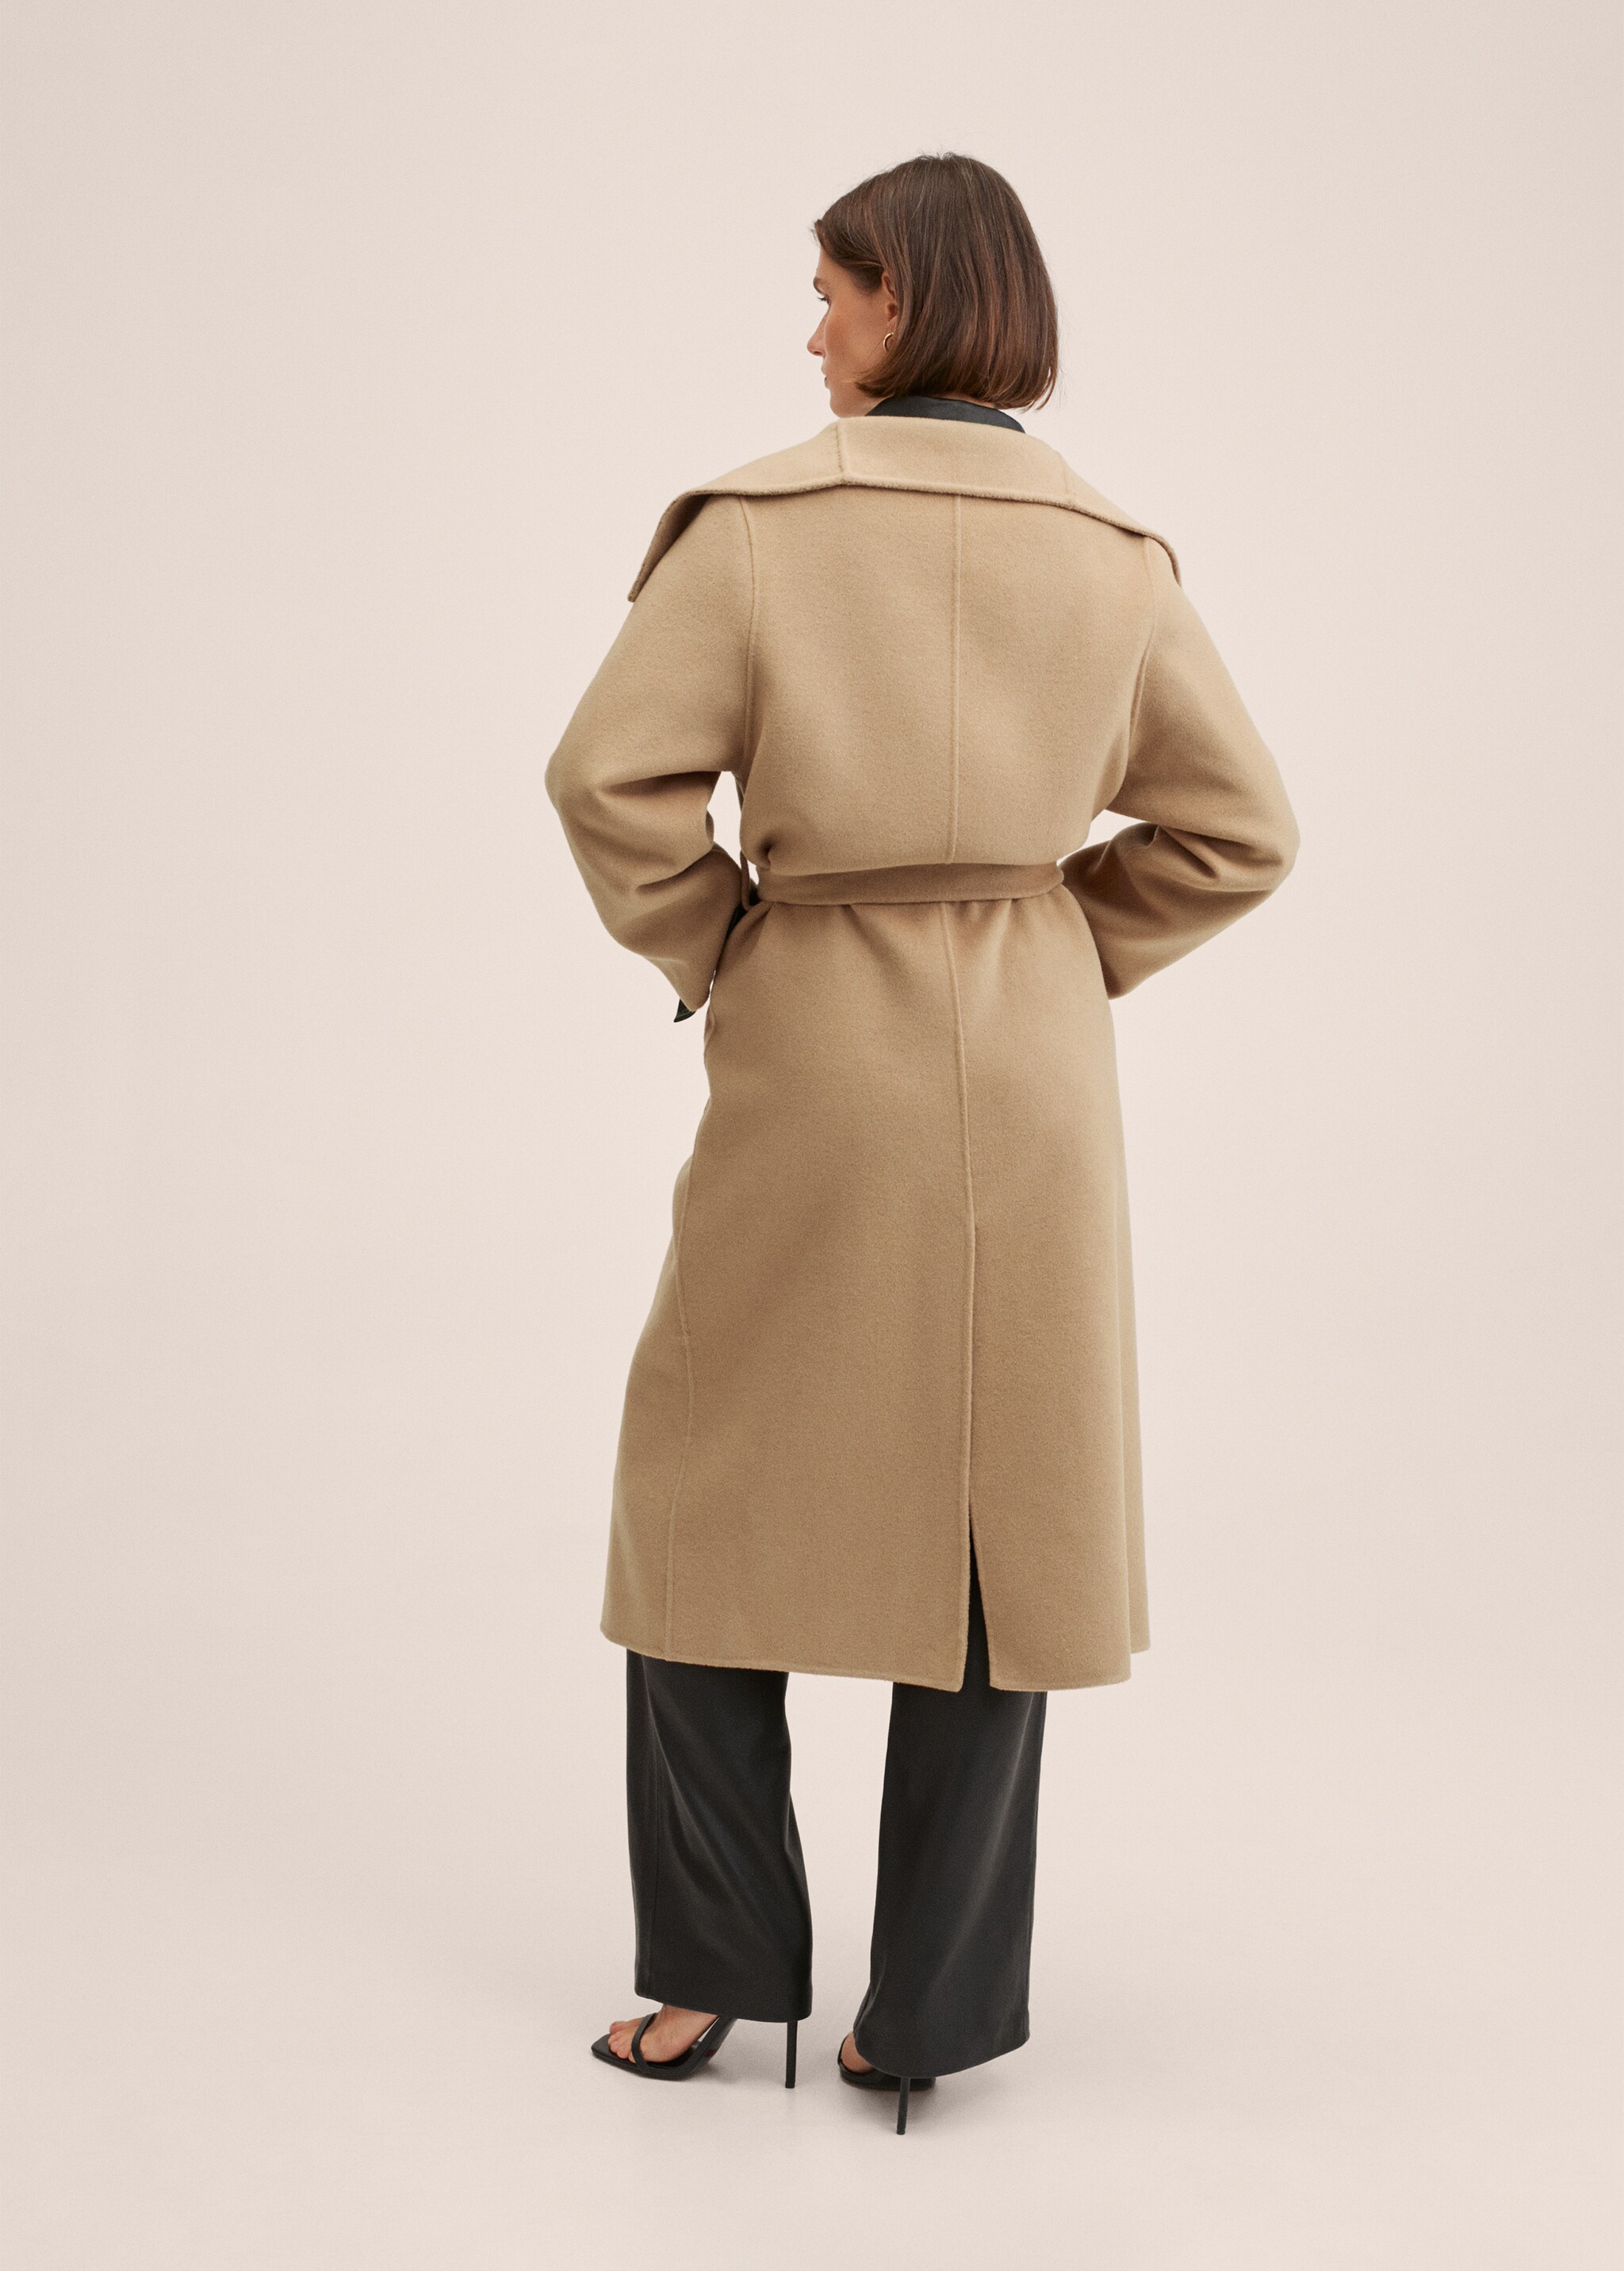 Handmade Mantel mit Gürtel - Rückseite des Artikels